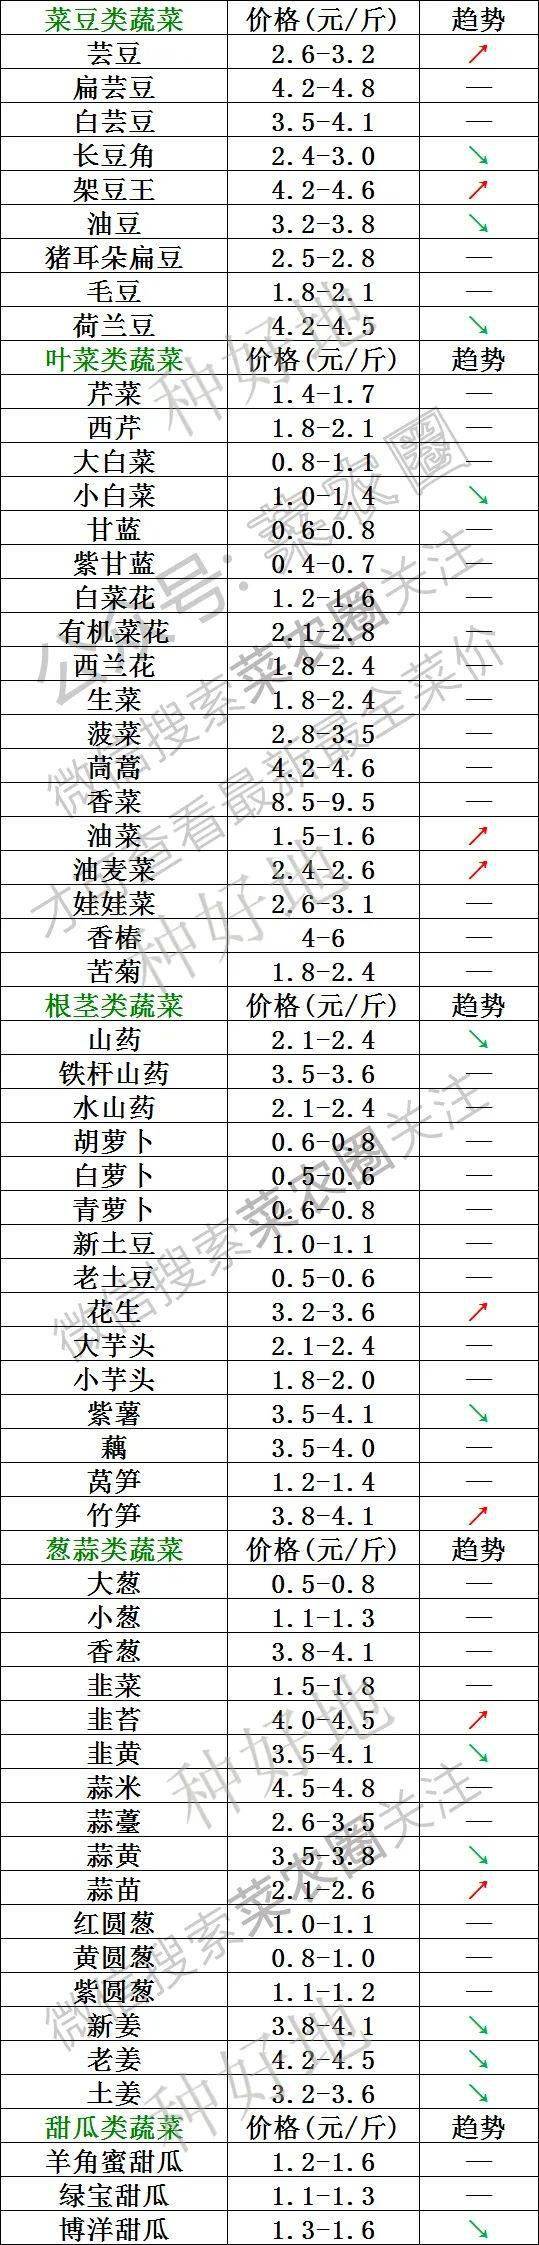 2021年7月30日北京新发地,山东寿光,云南,河北石家庄今日蔬菜价格行情一览表